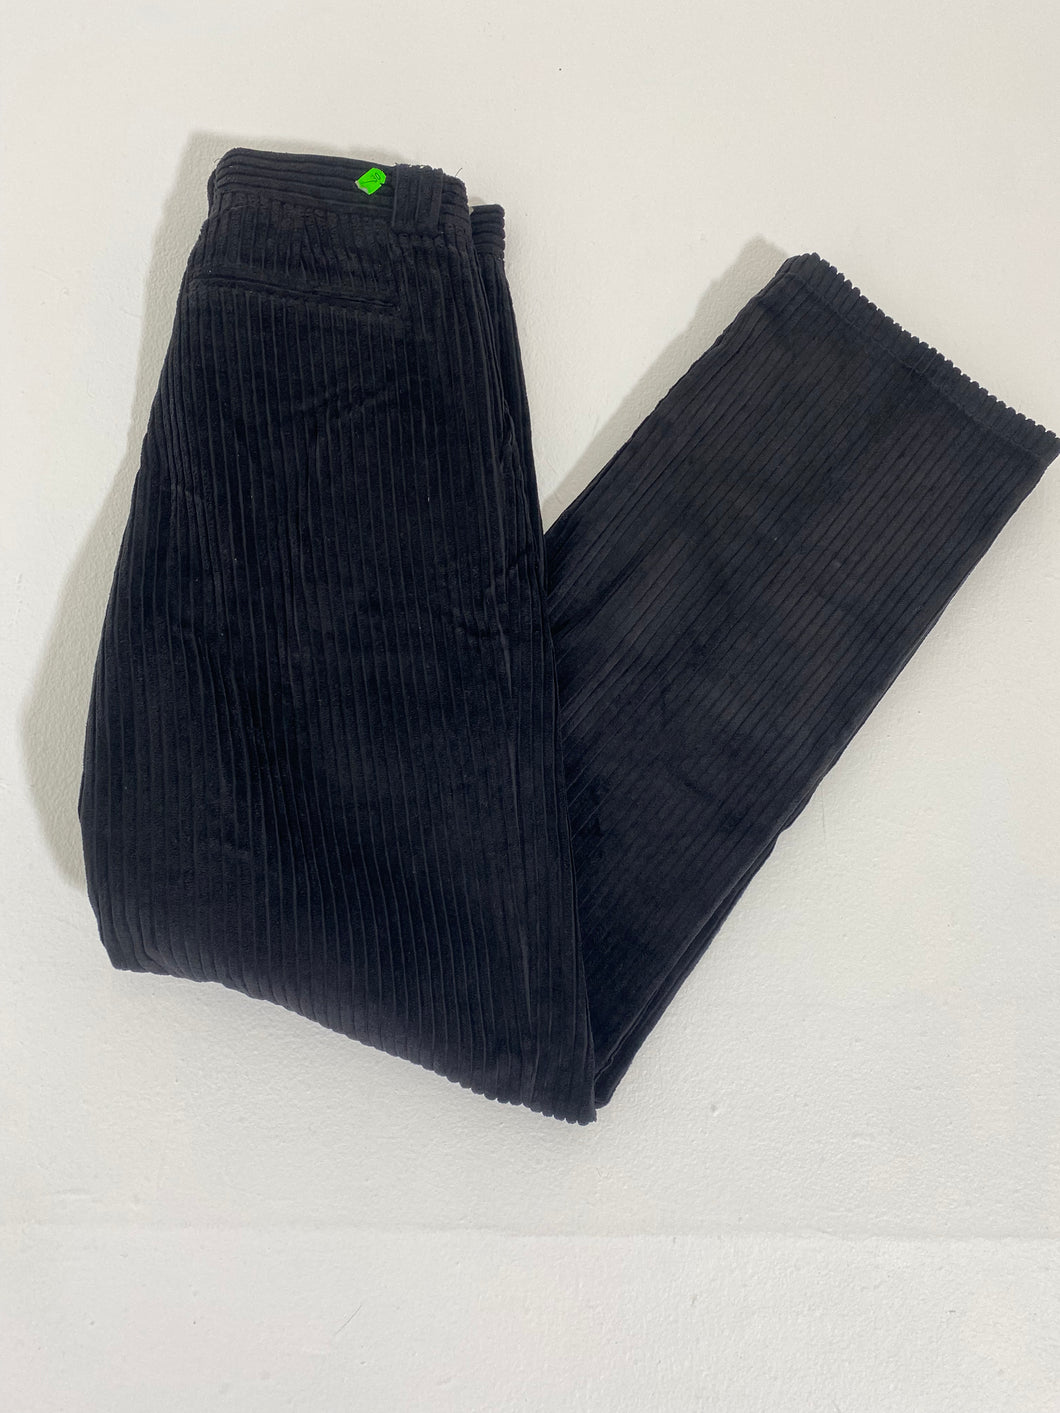 Vintage 1990's Black GABO Corduroy Pants Sz. 30x30